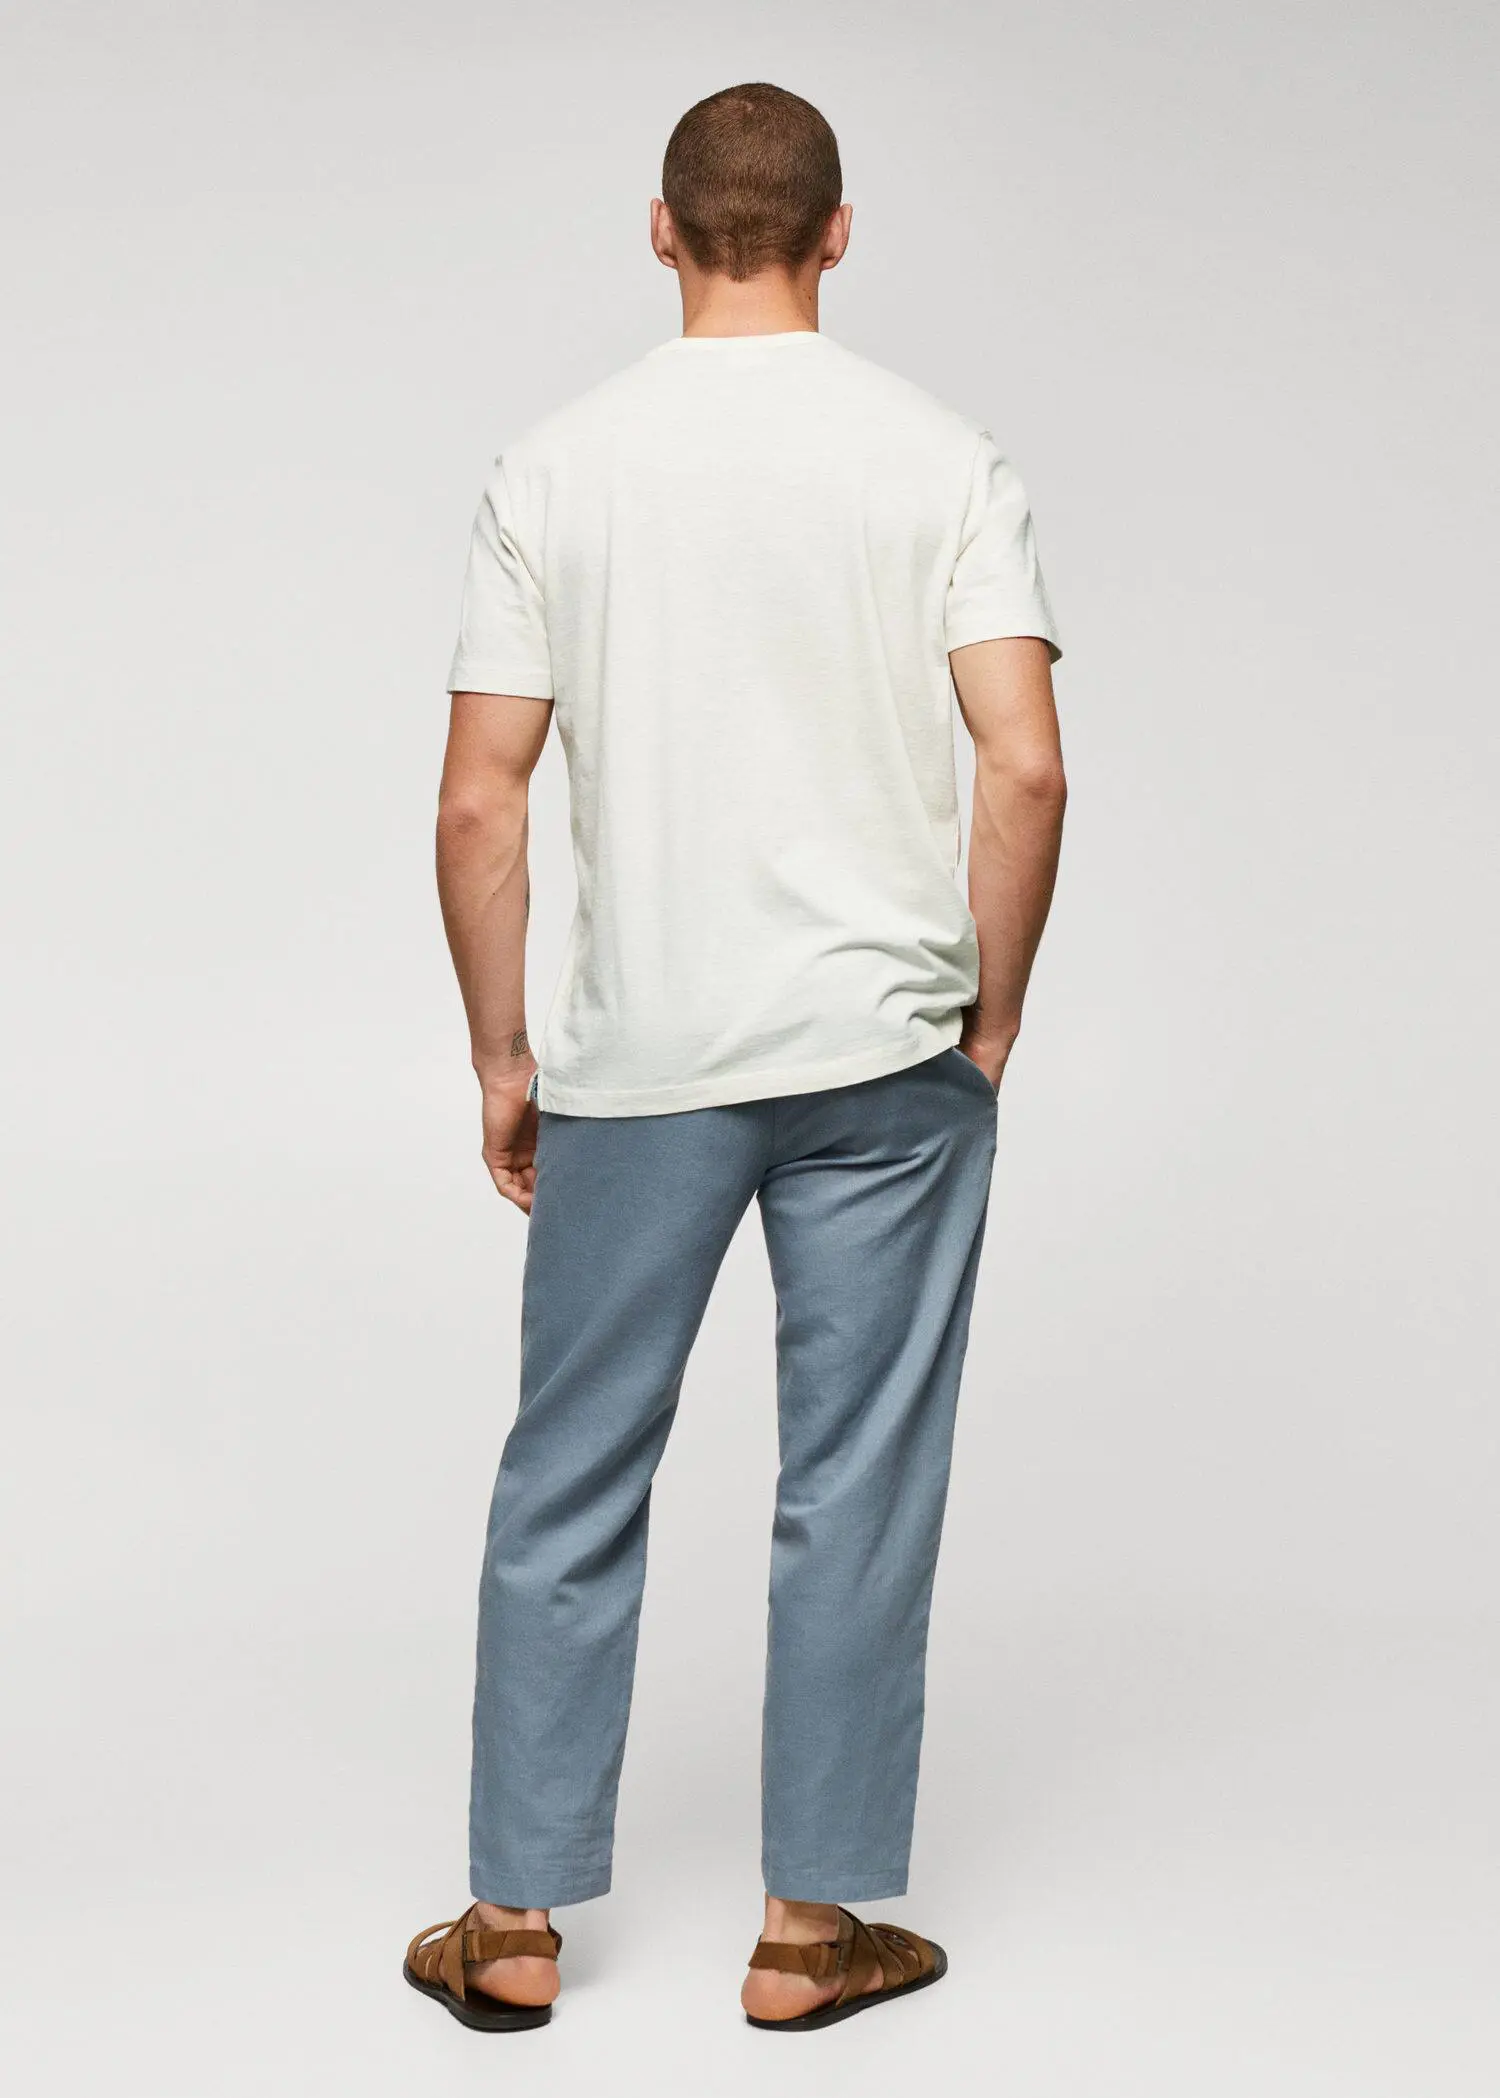 Mango T-shirt de 100% algodão com bolso. 3